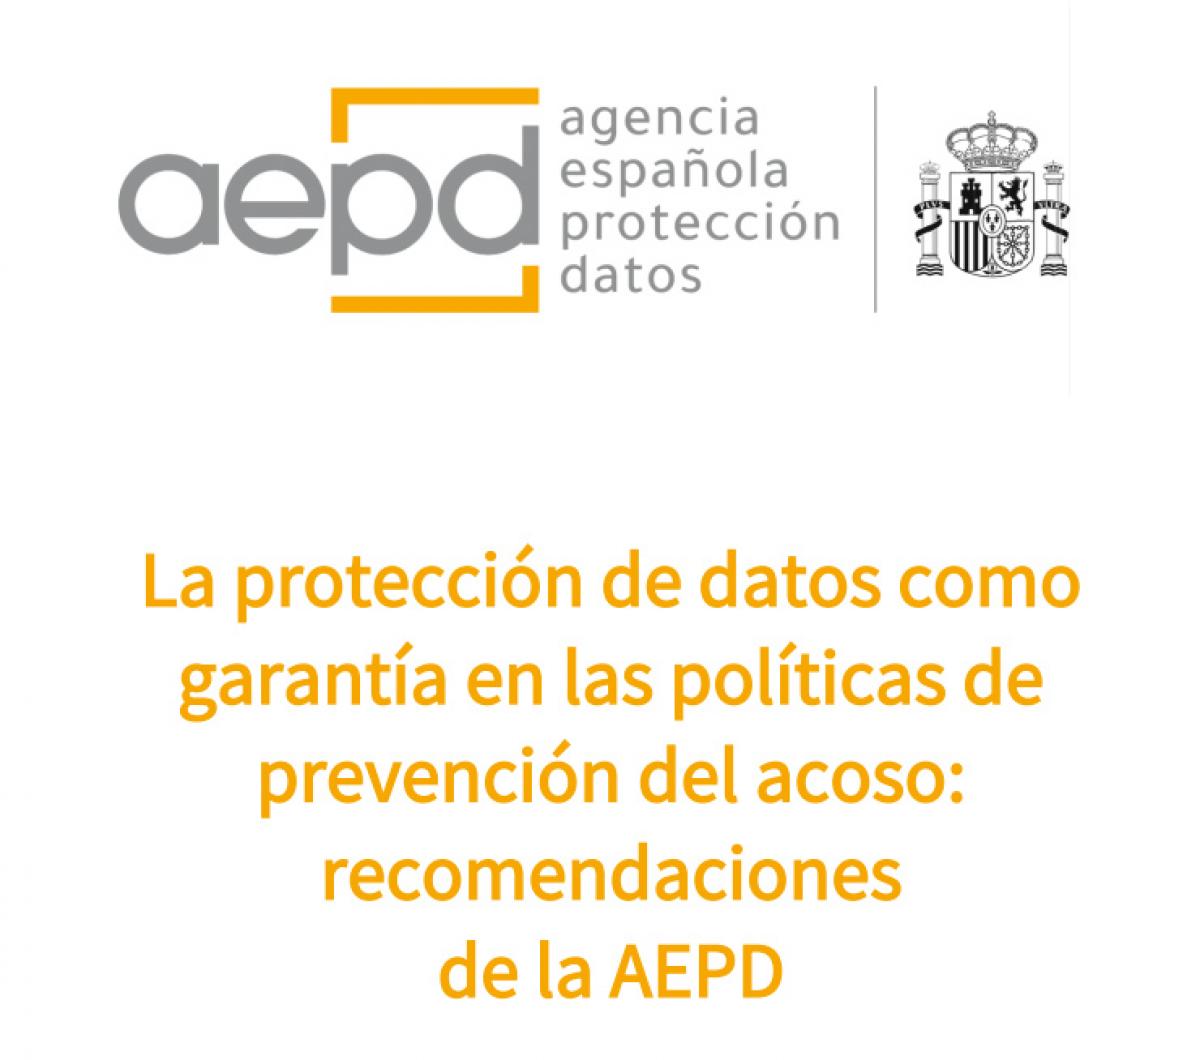 La proteccin de datos como garanta en las polticas de prevencin del acoso: recomendaciones de la AEPD